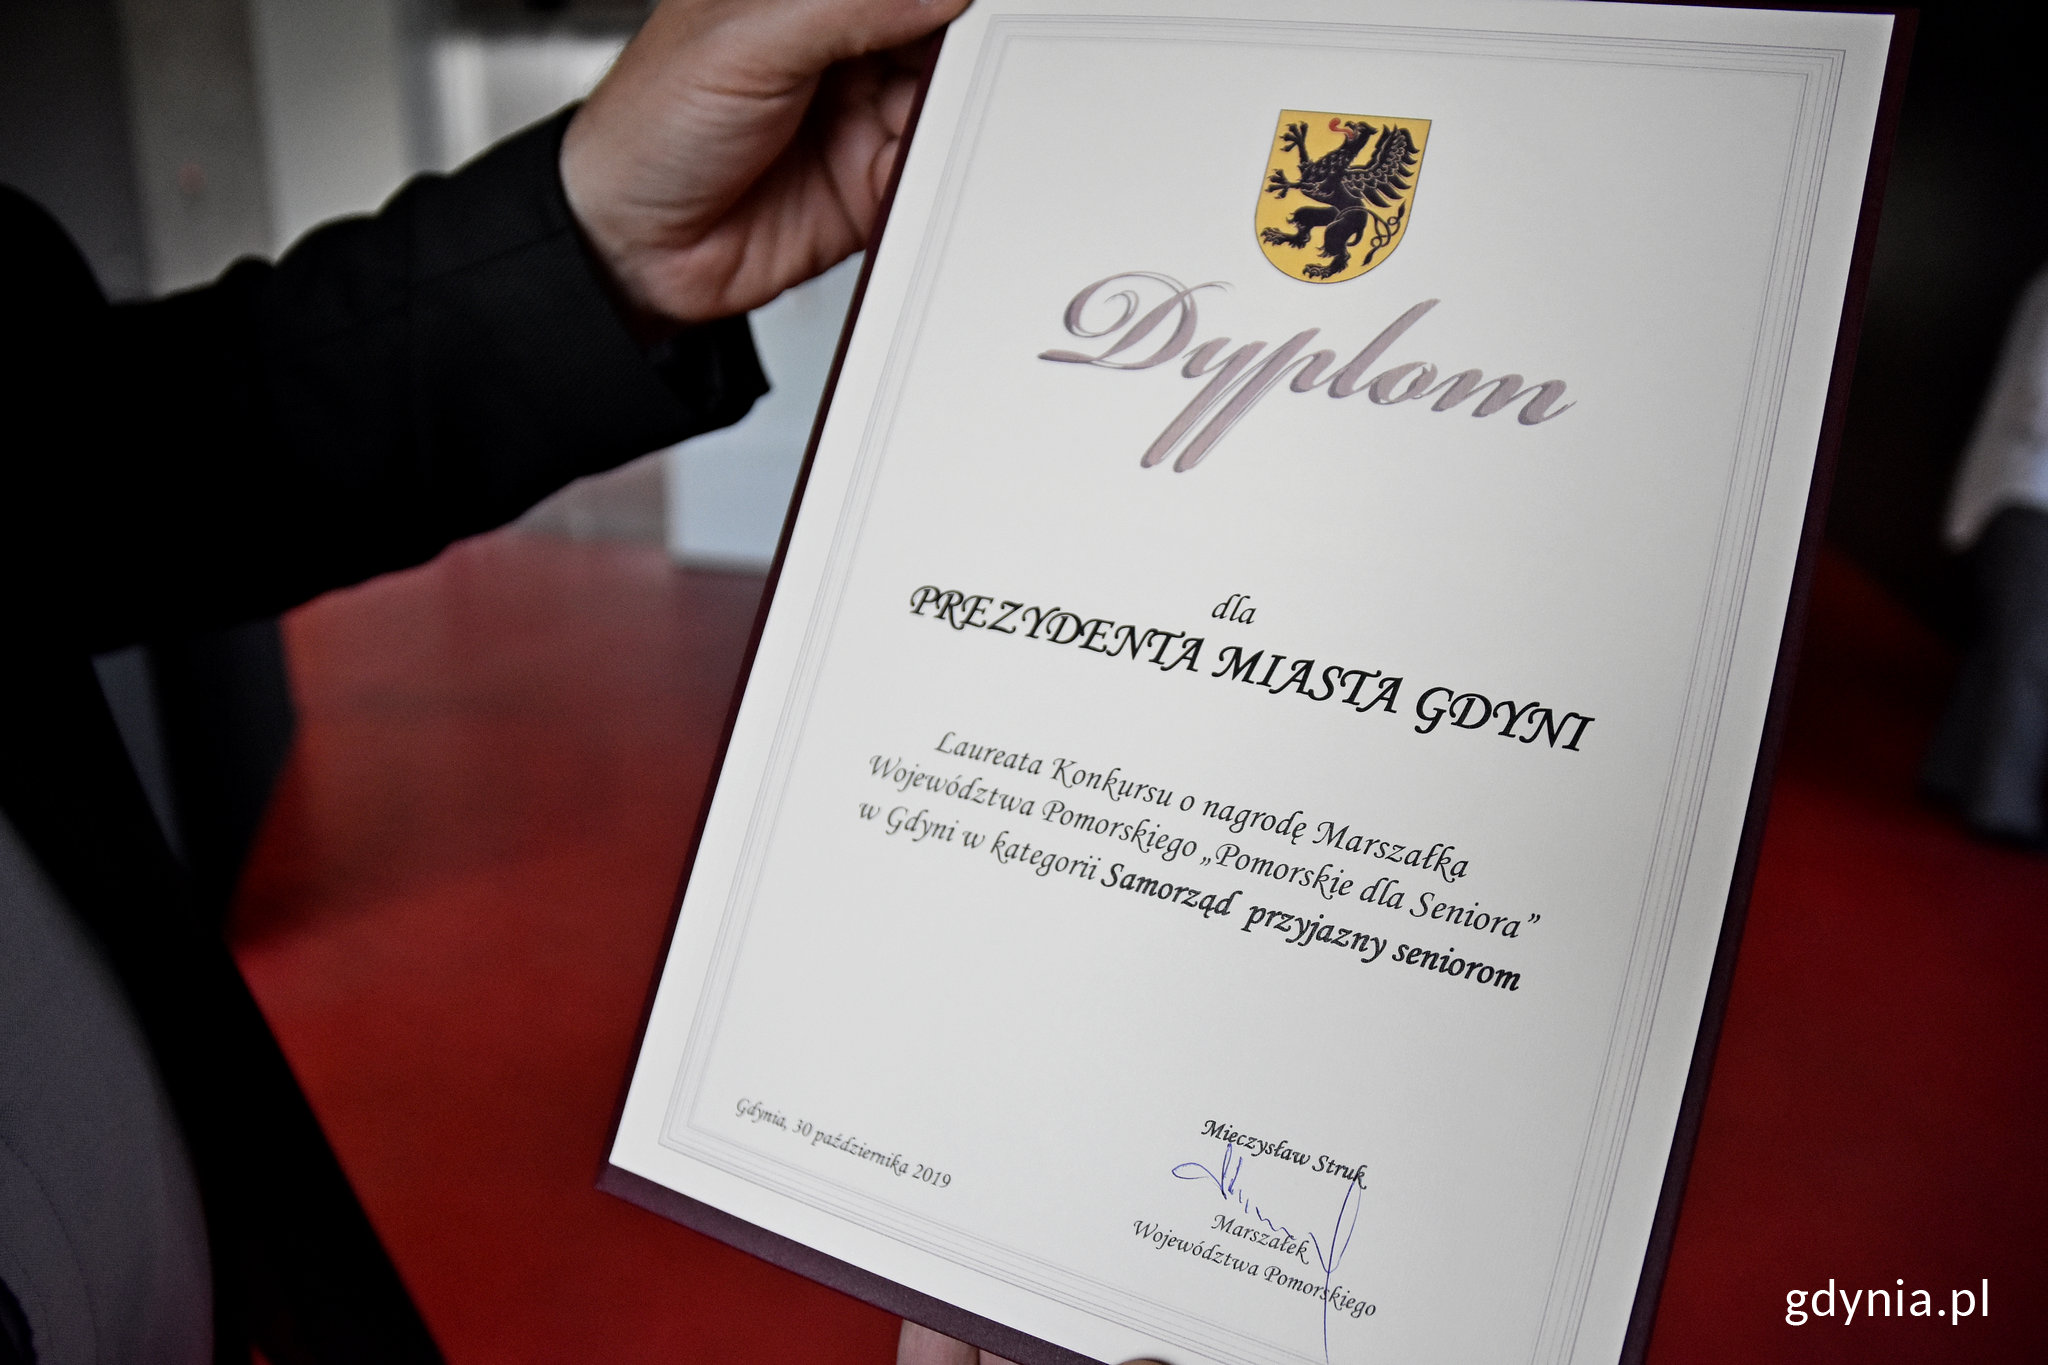 Wyróżnienie przyznane Gdyni w konkursie o nagrodę Marszałka Województwa Pomorskiego „Pomorskie dla Seniora".